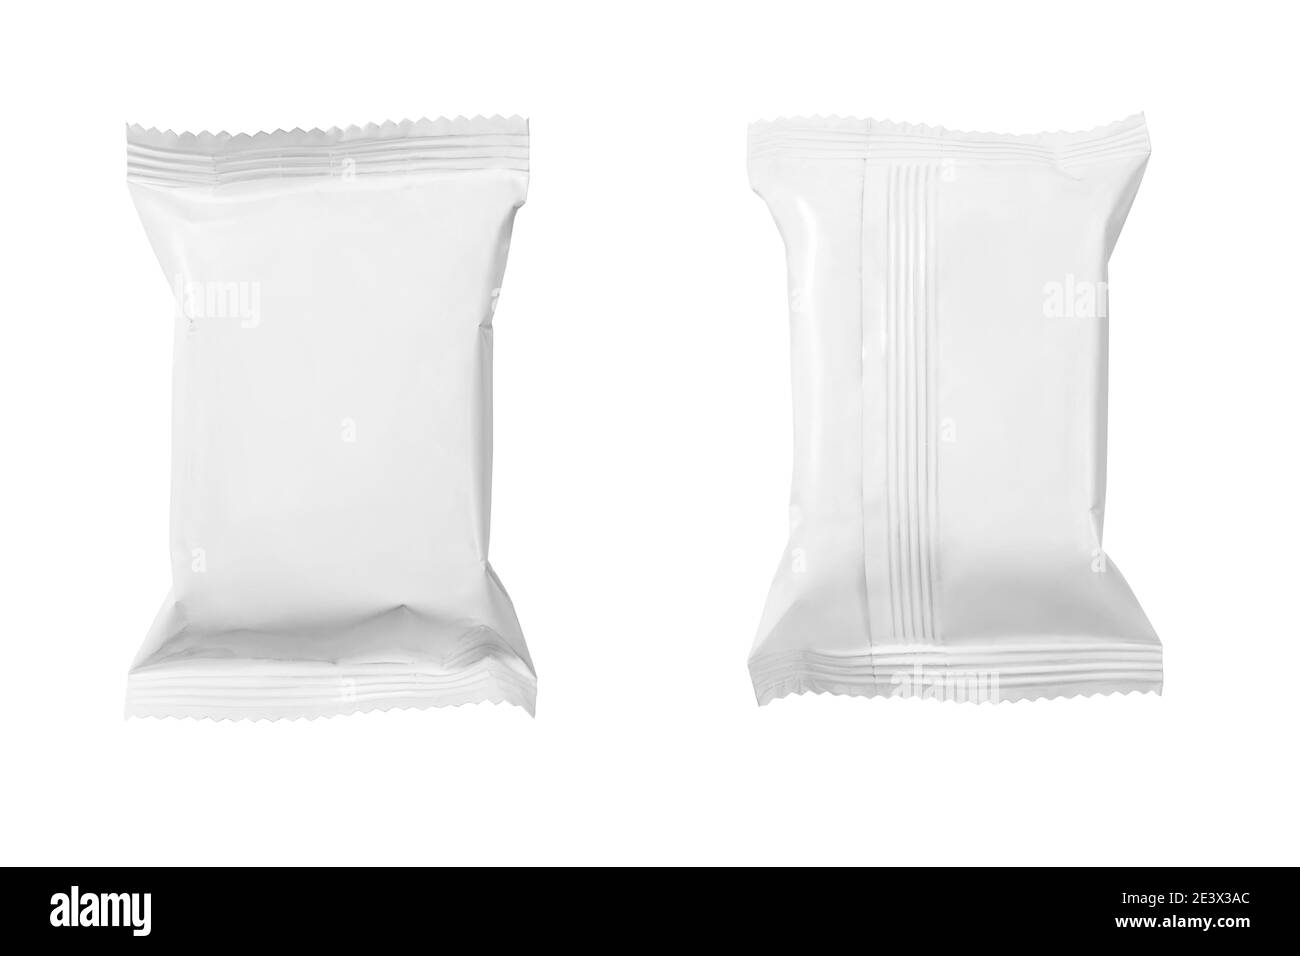 Vista frontale e posteriore della confezione vuota di sacchetto di carta da snack isolato su bianco con tracciato di ritaglio Foto Stock